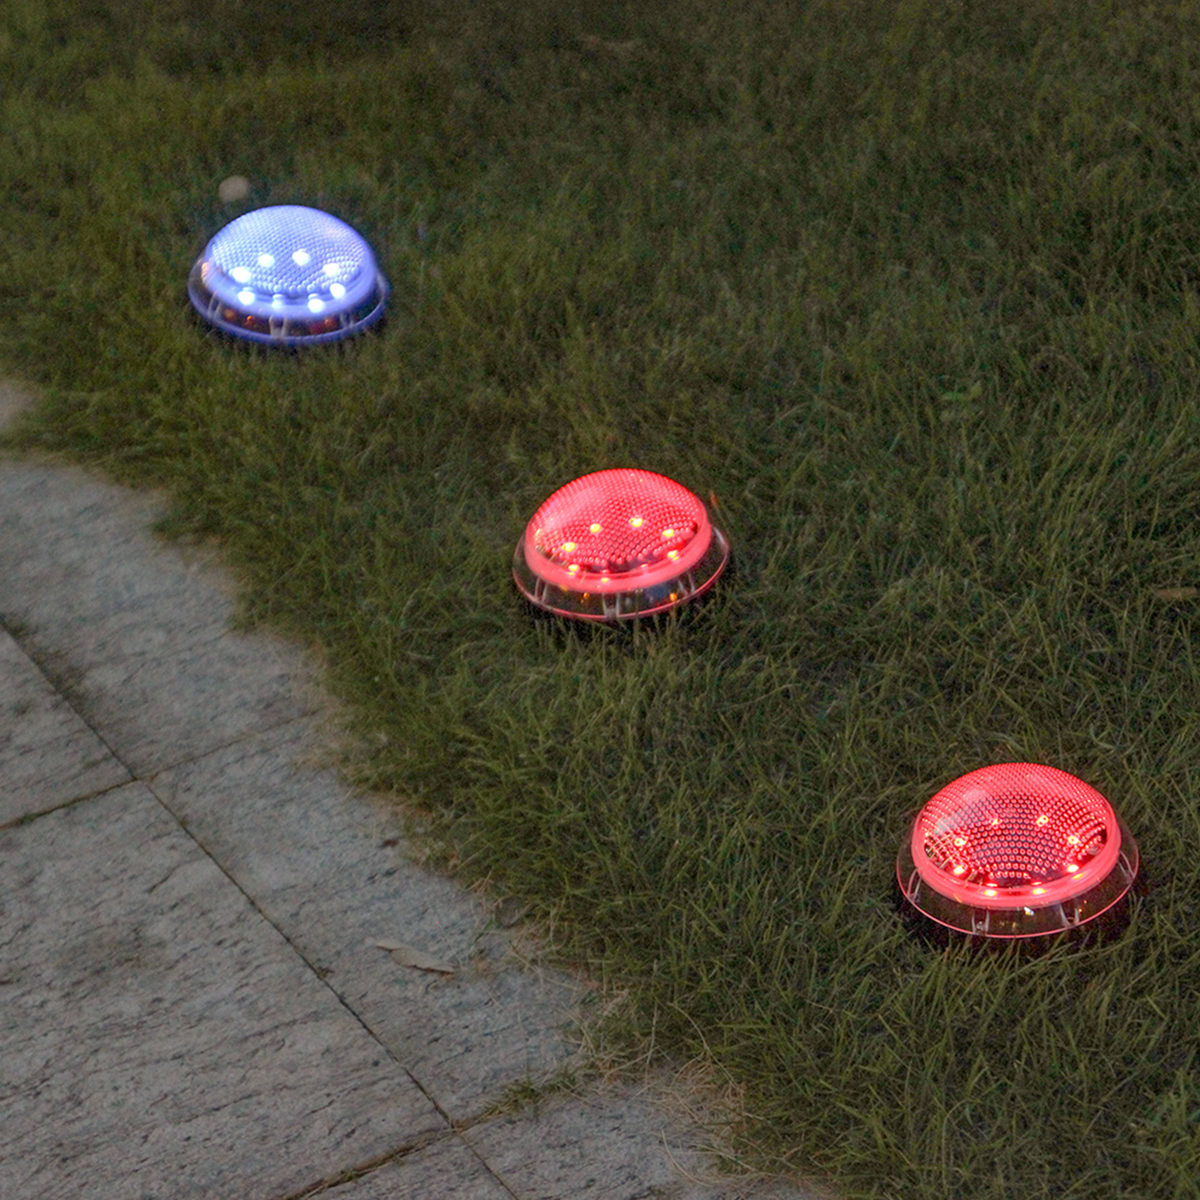 2PCS-Auto-Sensing-LED-Solar-Ball-Light-Garden-Outdoor-Patio-Lawn-Path-Lamp-For-Home-Decor-1770112-9